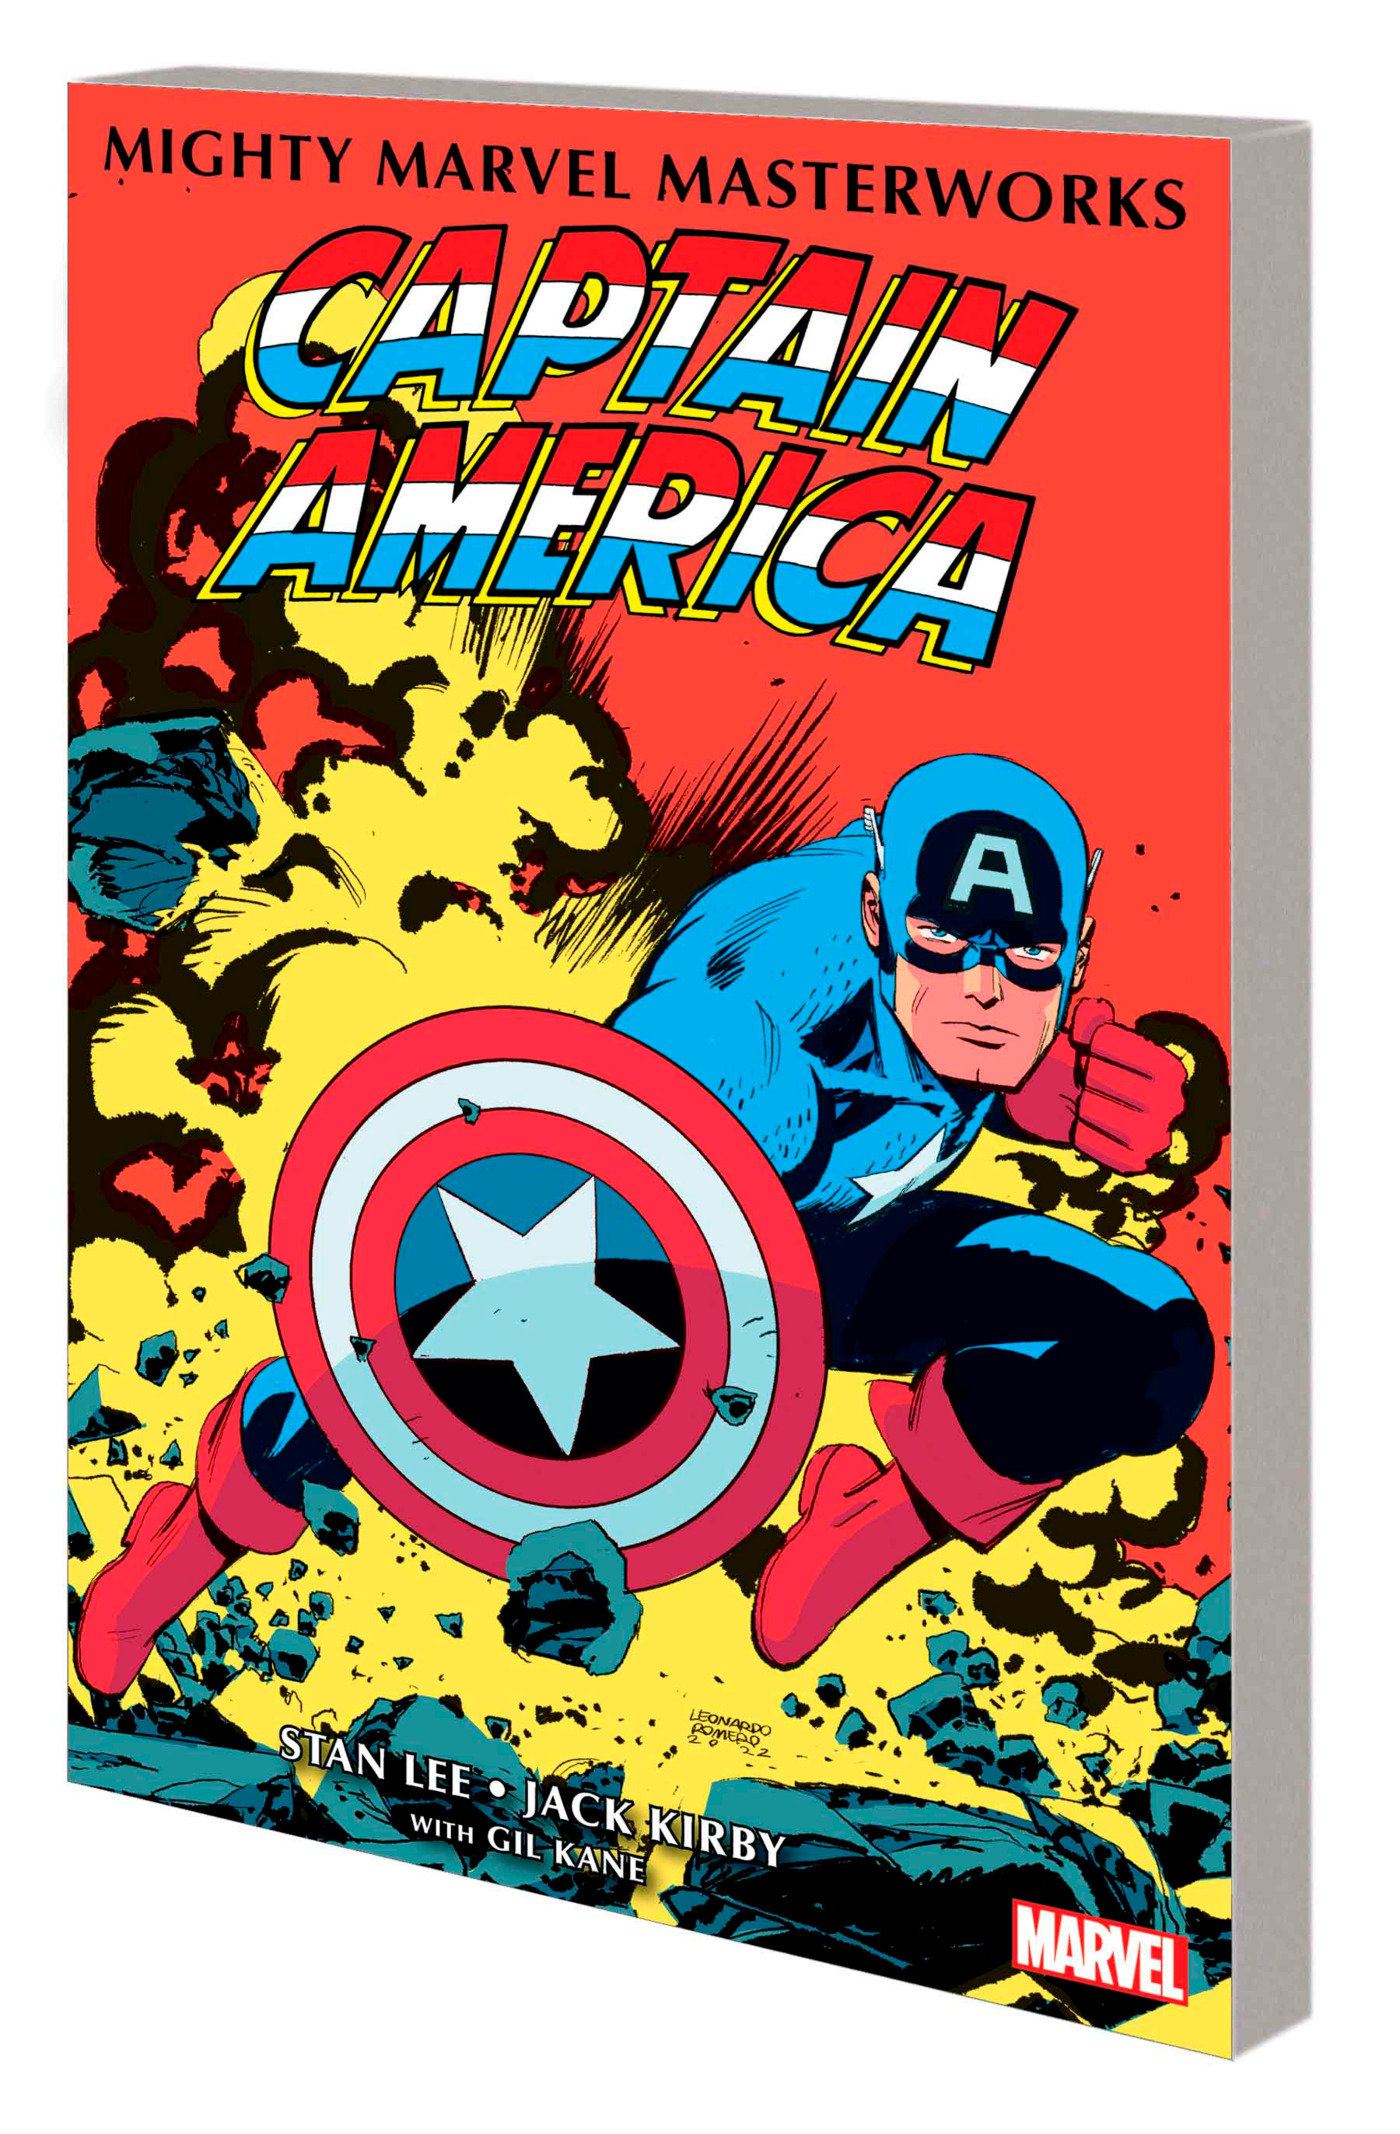 Mighty Marvel Masterworks Captain America Graphic Novel Volume 2 Red Skull Lives